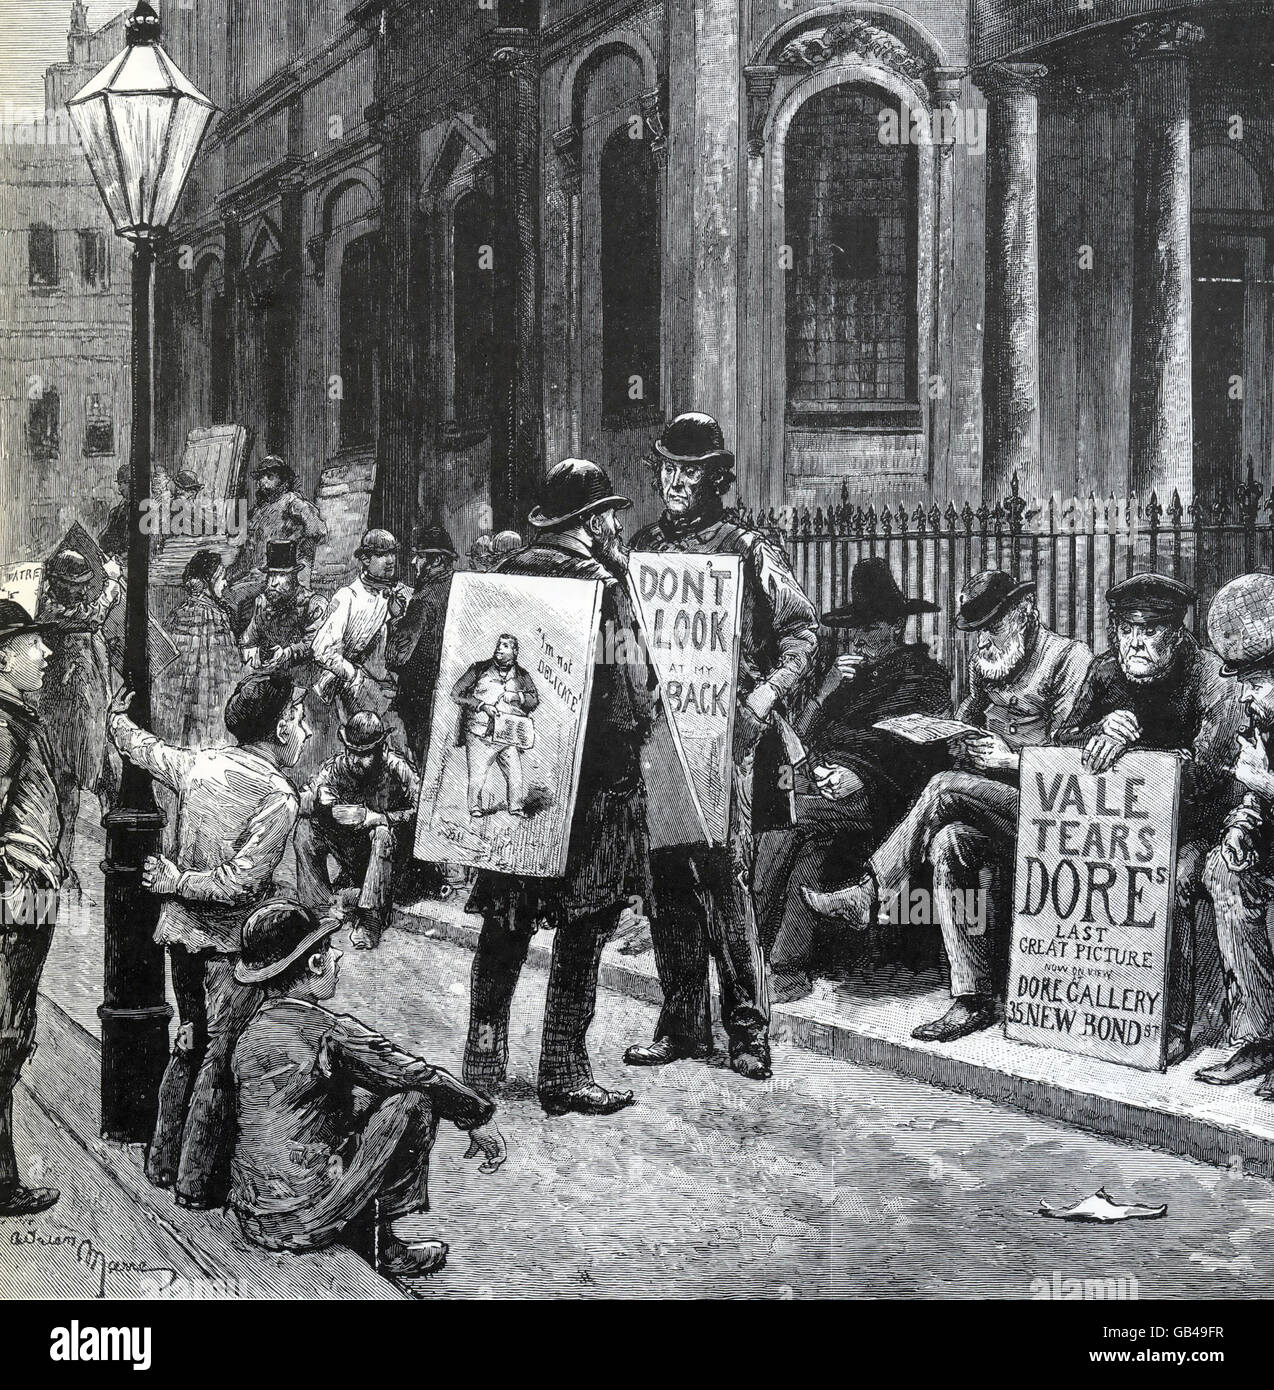 Scheda SANDWICH pubblicità circa 1890. L'uomo seduto alla destra della pubblicità è una mostra di opere di Dore. Foto Stock